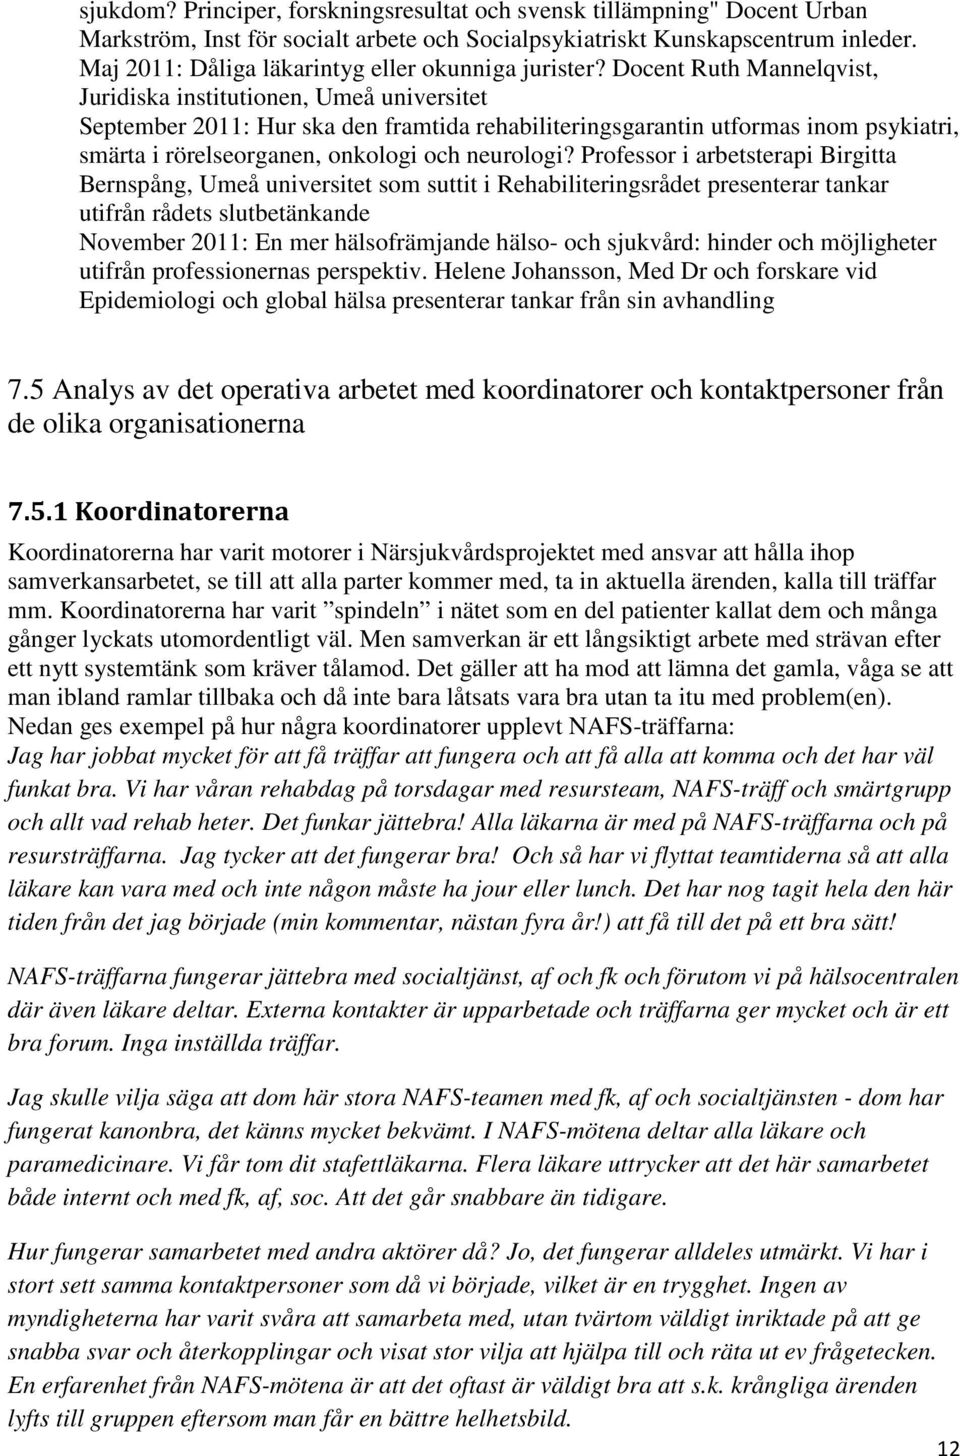 Docent Ruth Mannelqvist, Juridiska institutionen, Umeå universitet September 2011: Hur ska den framtida rehabiliteringsgarantin utformas inom psykiatri, smärta i rörelseorganen, onkologi och